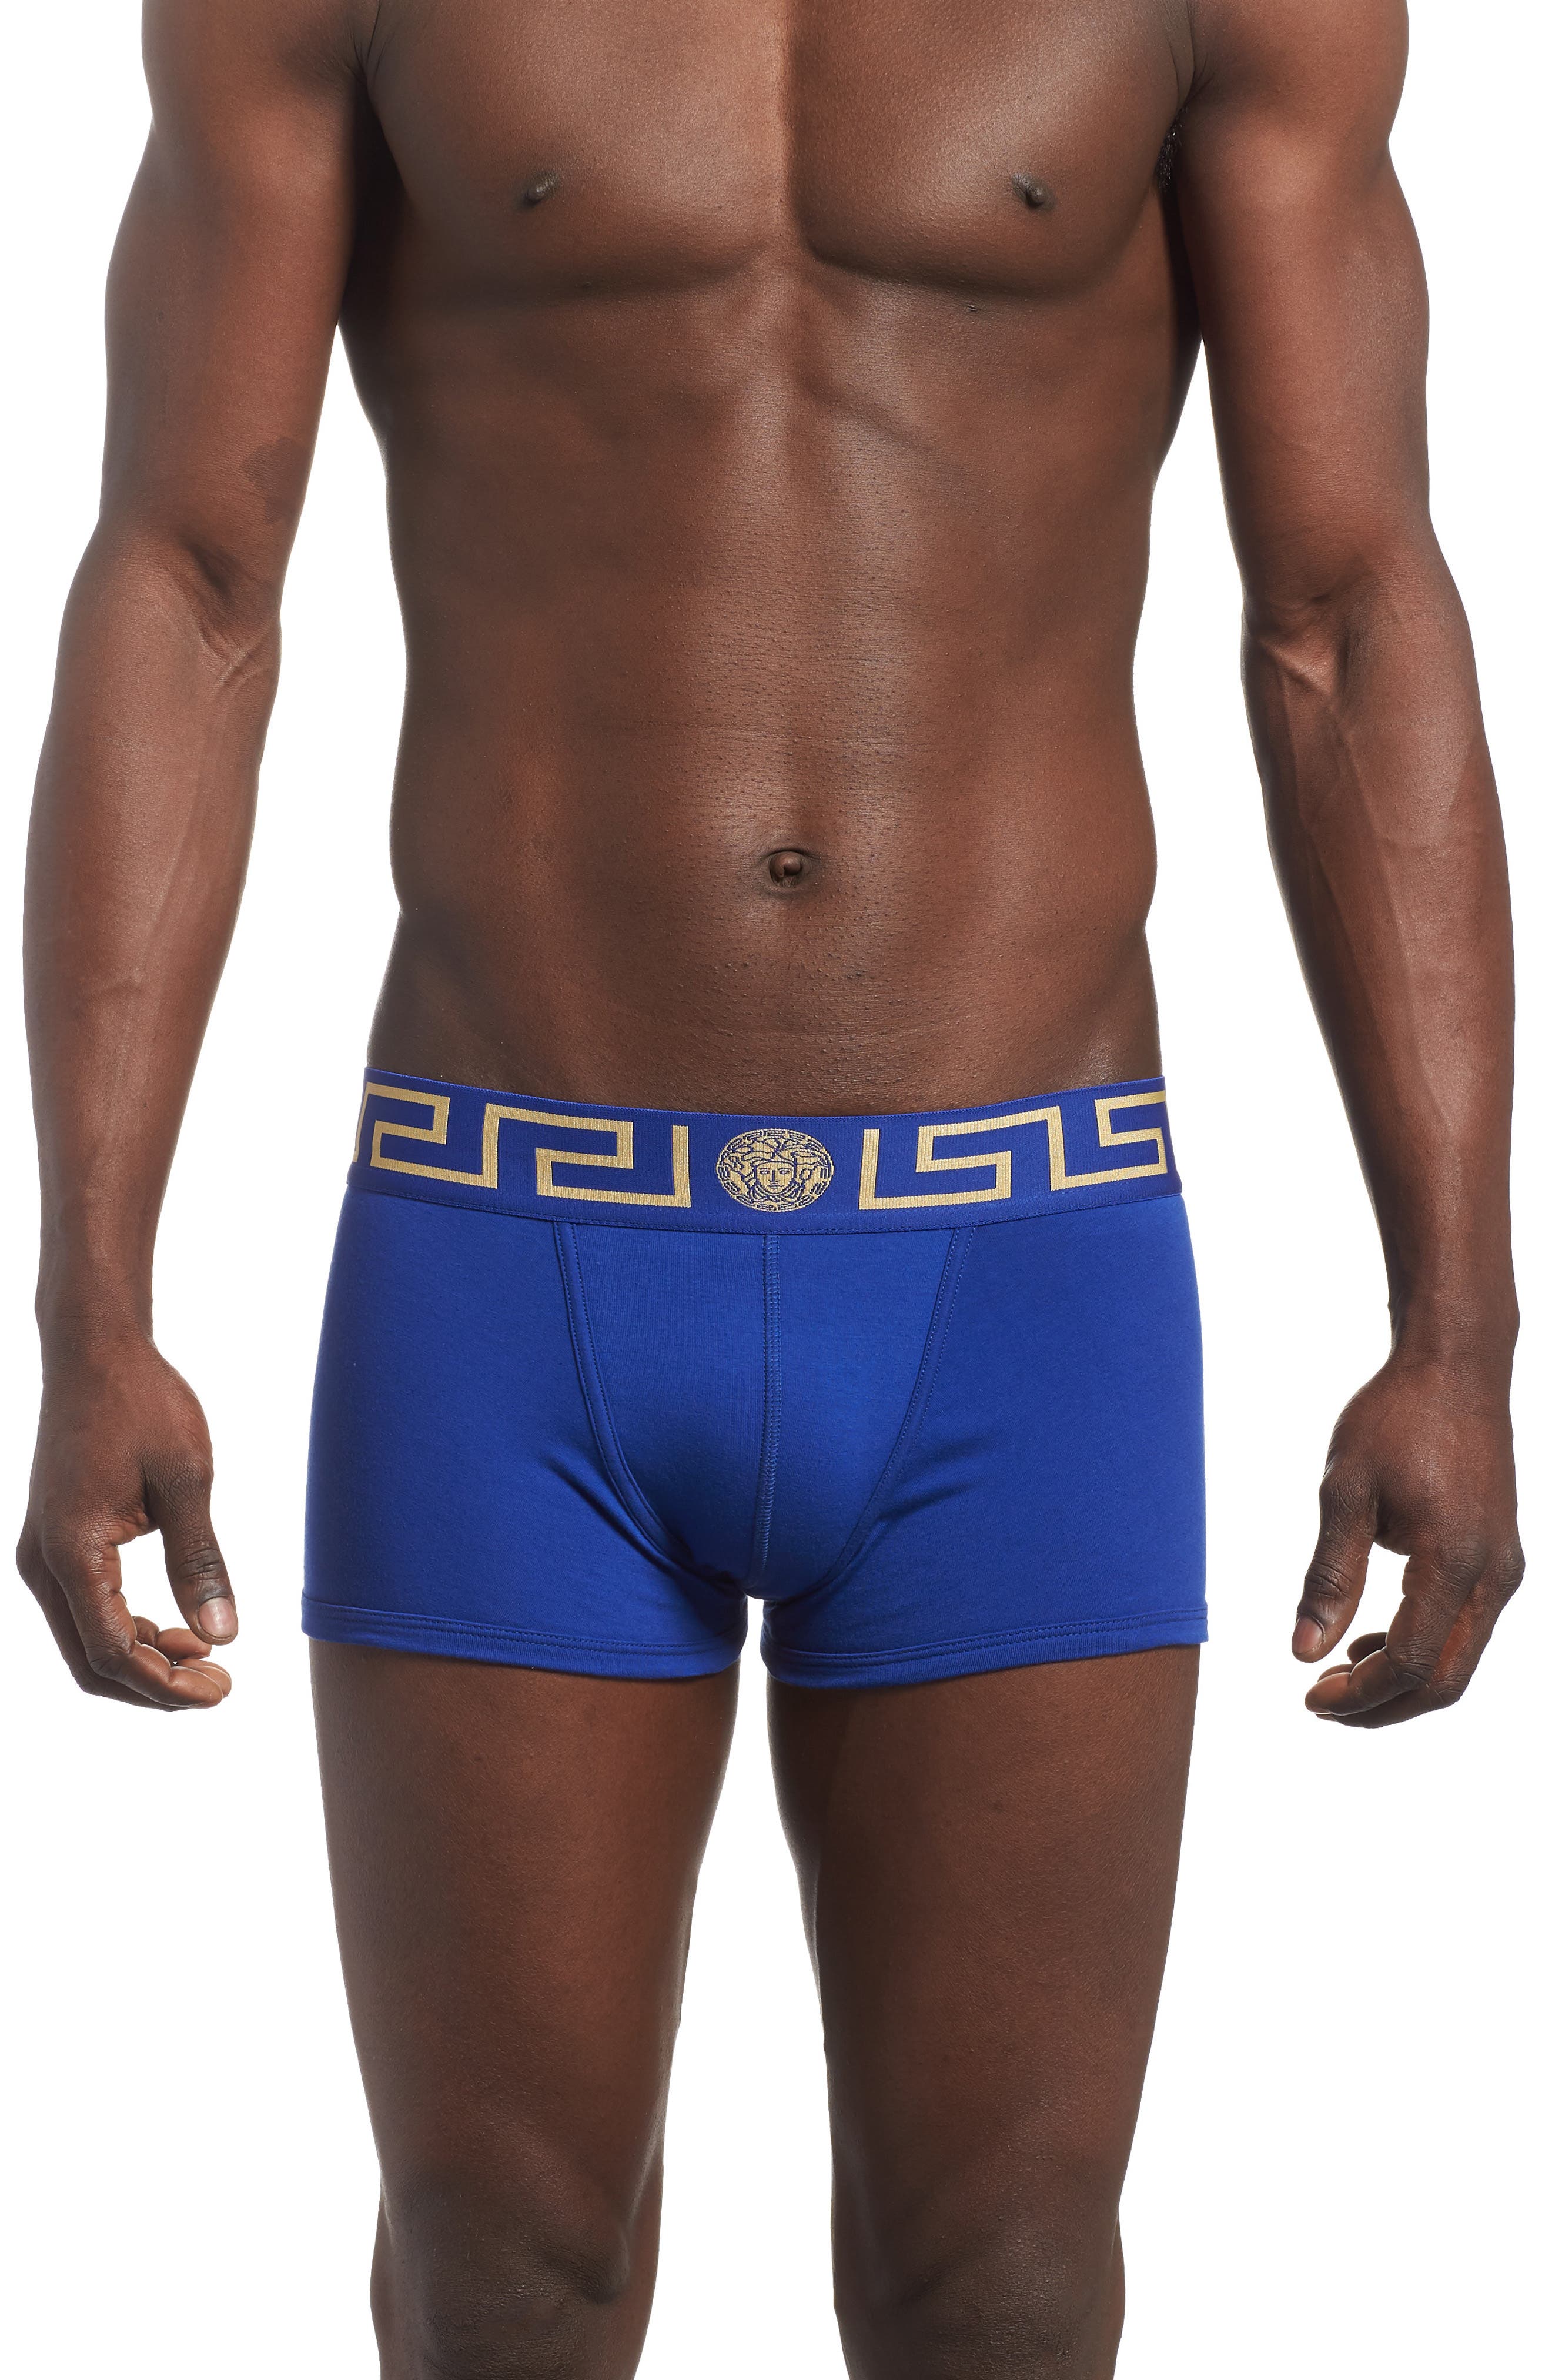 blue versace underwear